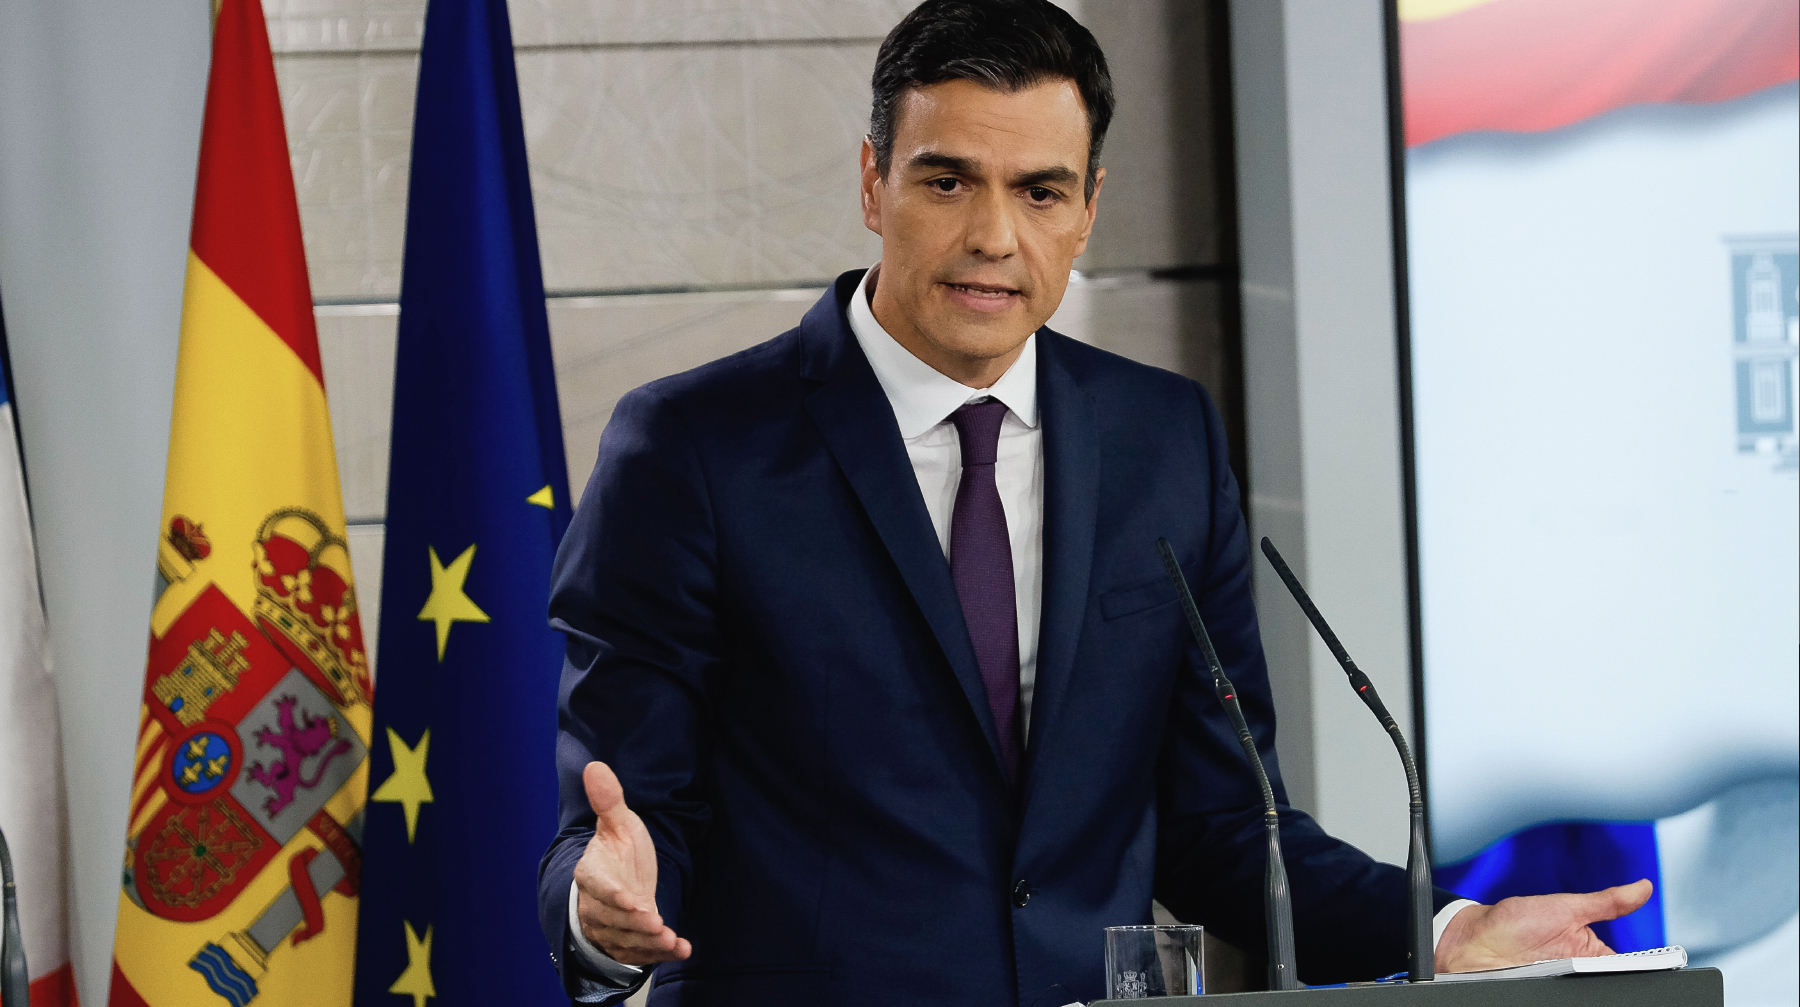 Испанский премьер-министр заявил, что Брюссель и Лондон согласились с требованиями Мадрида по гибралтарскому вопросу Фото: © GLOBAL LOOK Press / Panoramic / ZUMAPRESS.com